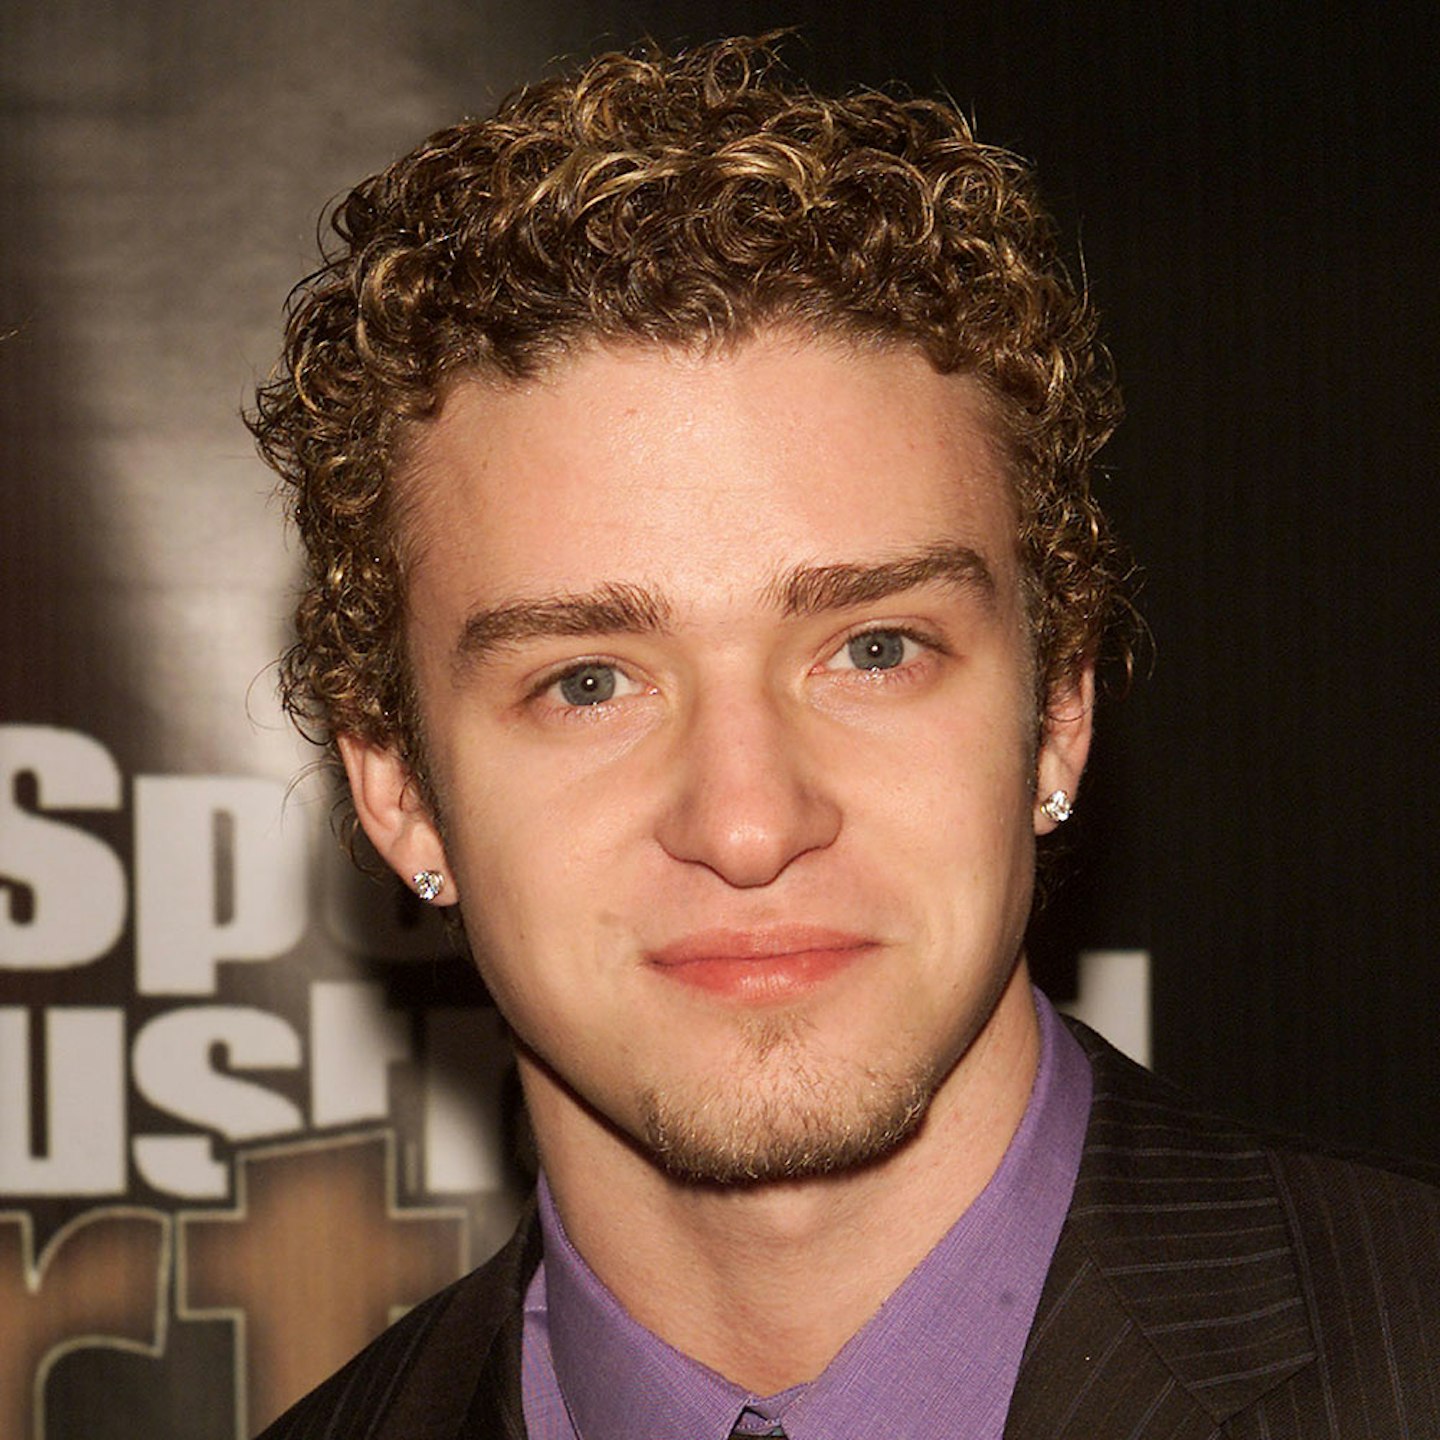 Justin Timberlake, then